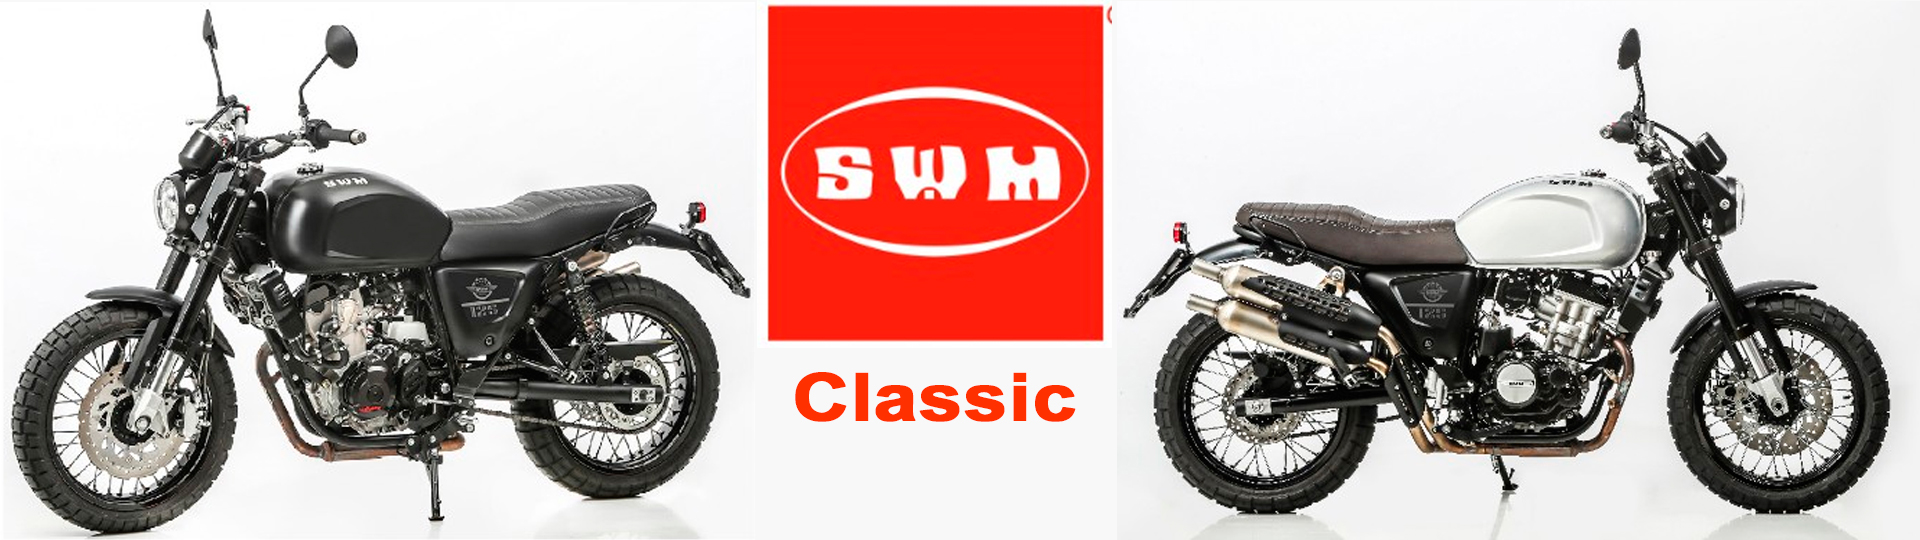 Testen Sie die Classic Bikes von SWM bei uns